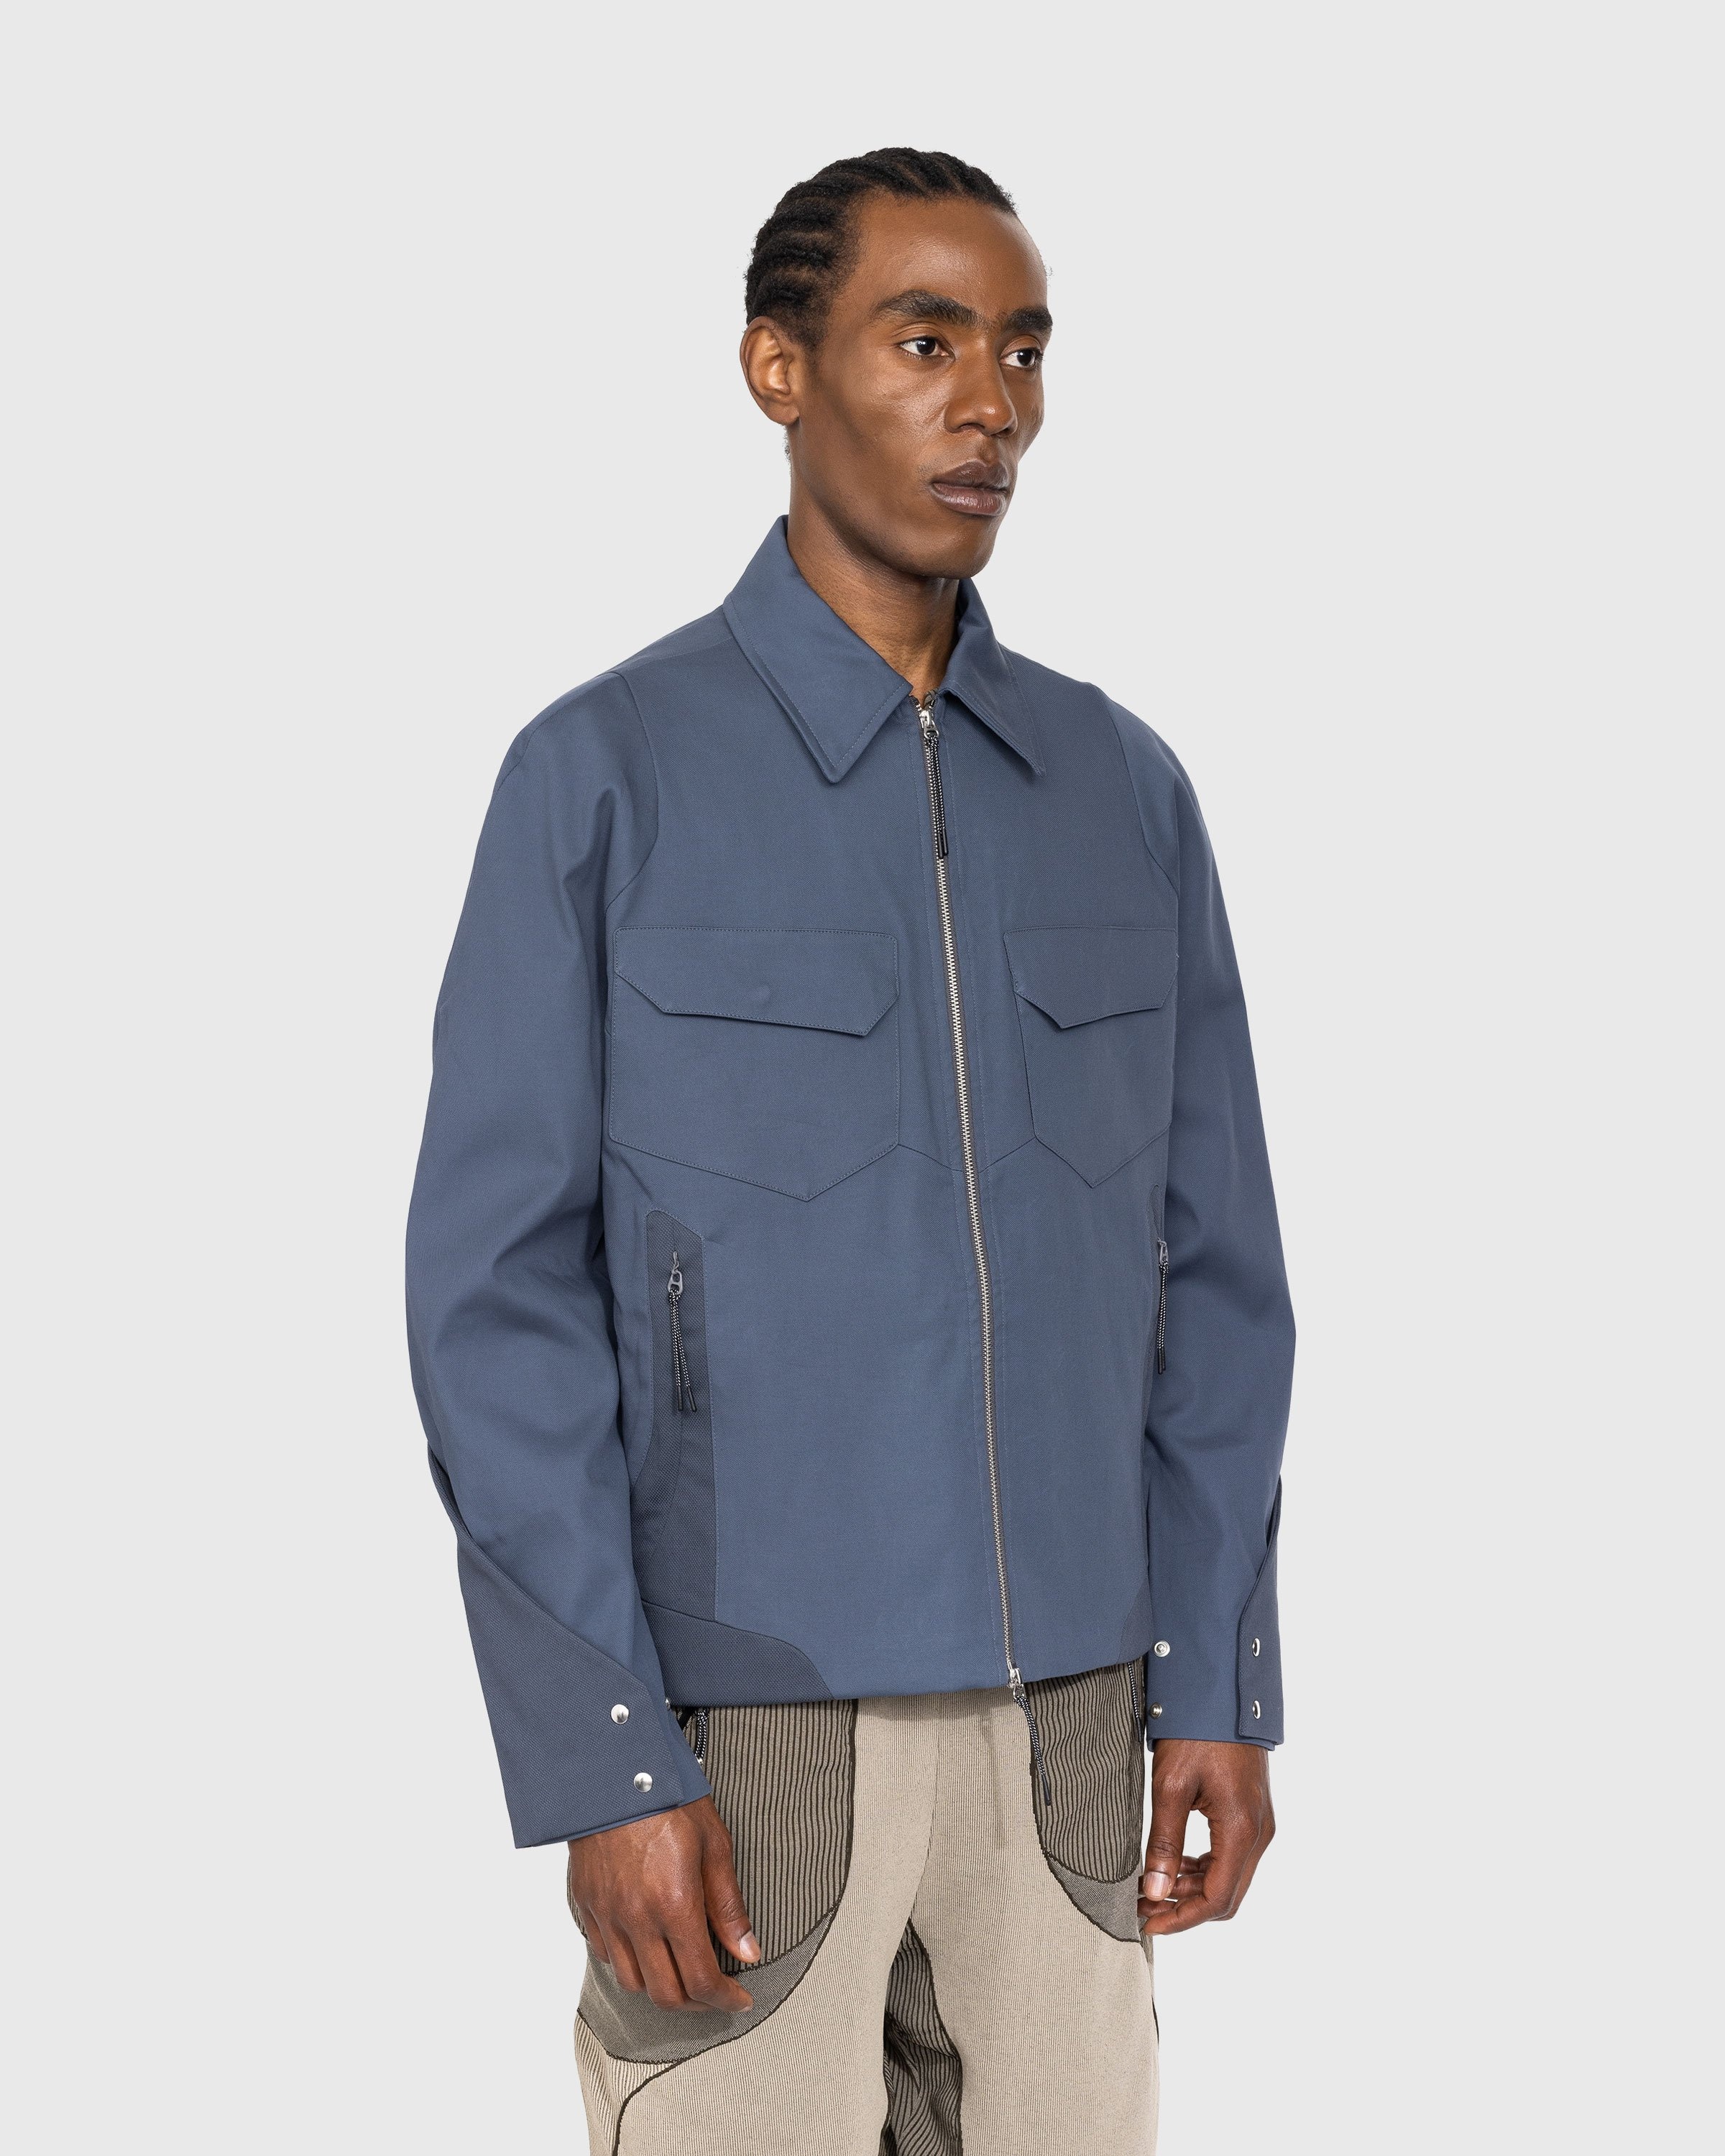 _J.L-A.L_ – Delwa Jacket Blue - Outerwear - Blue - Image 2